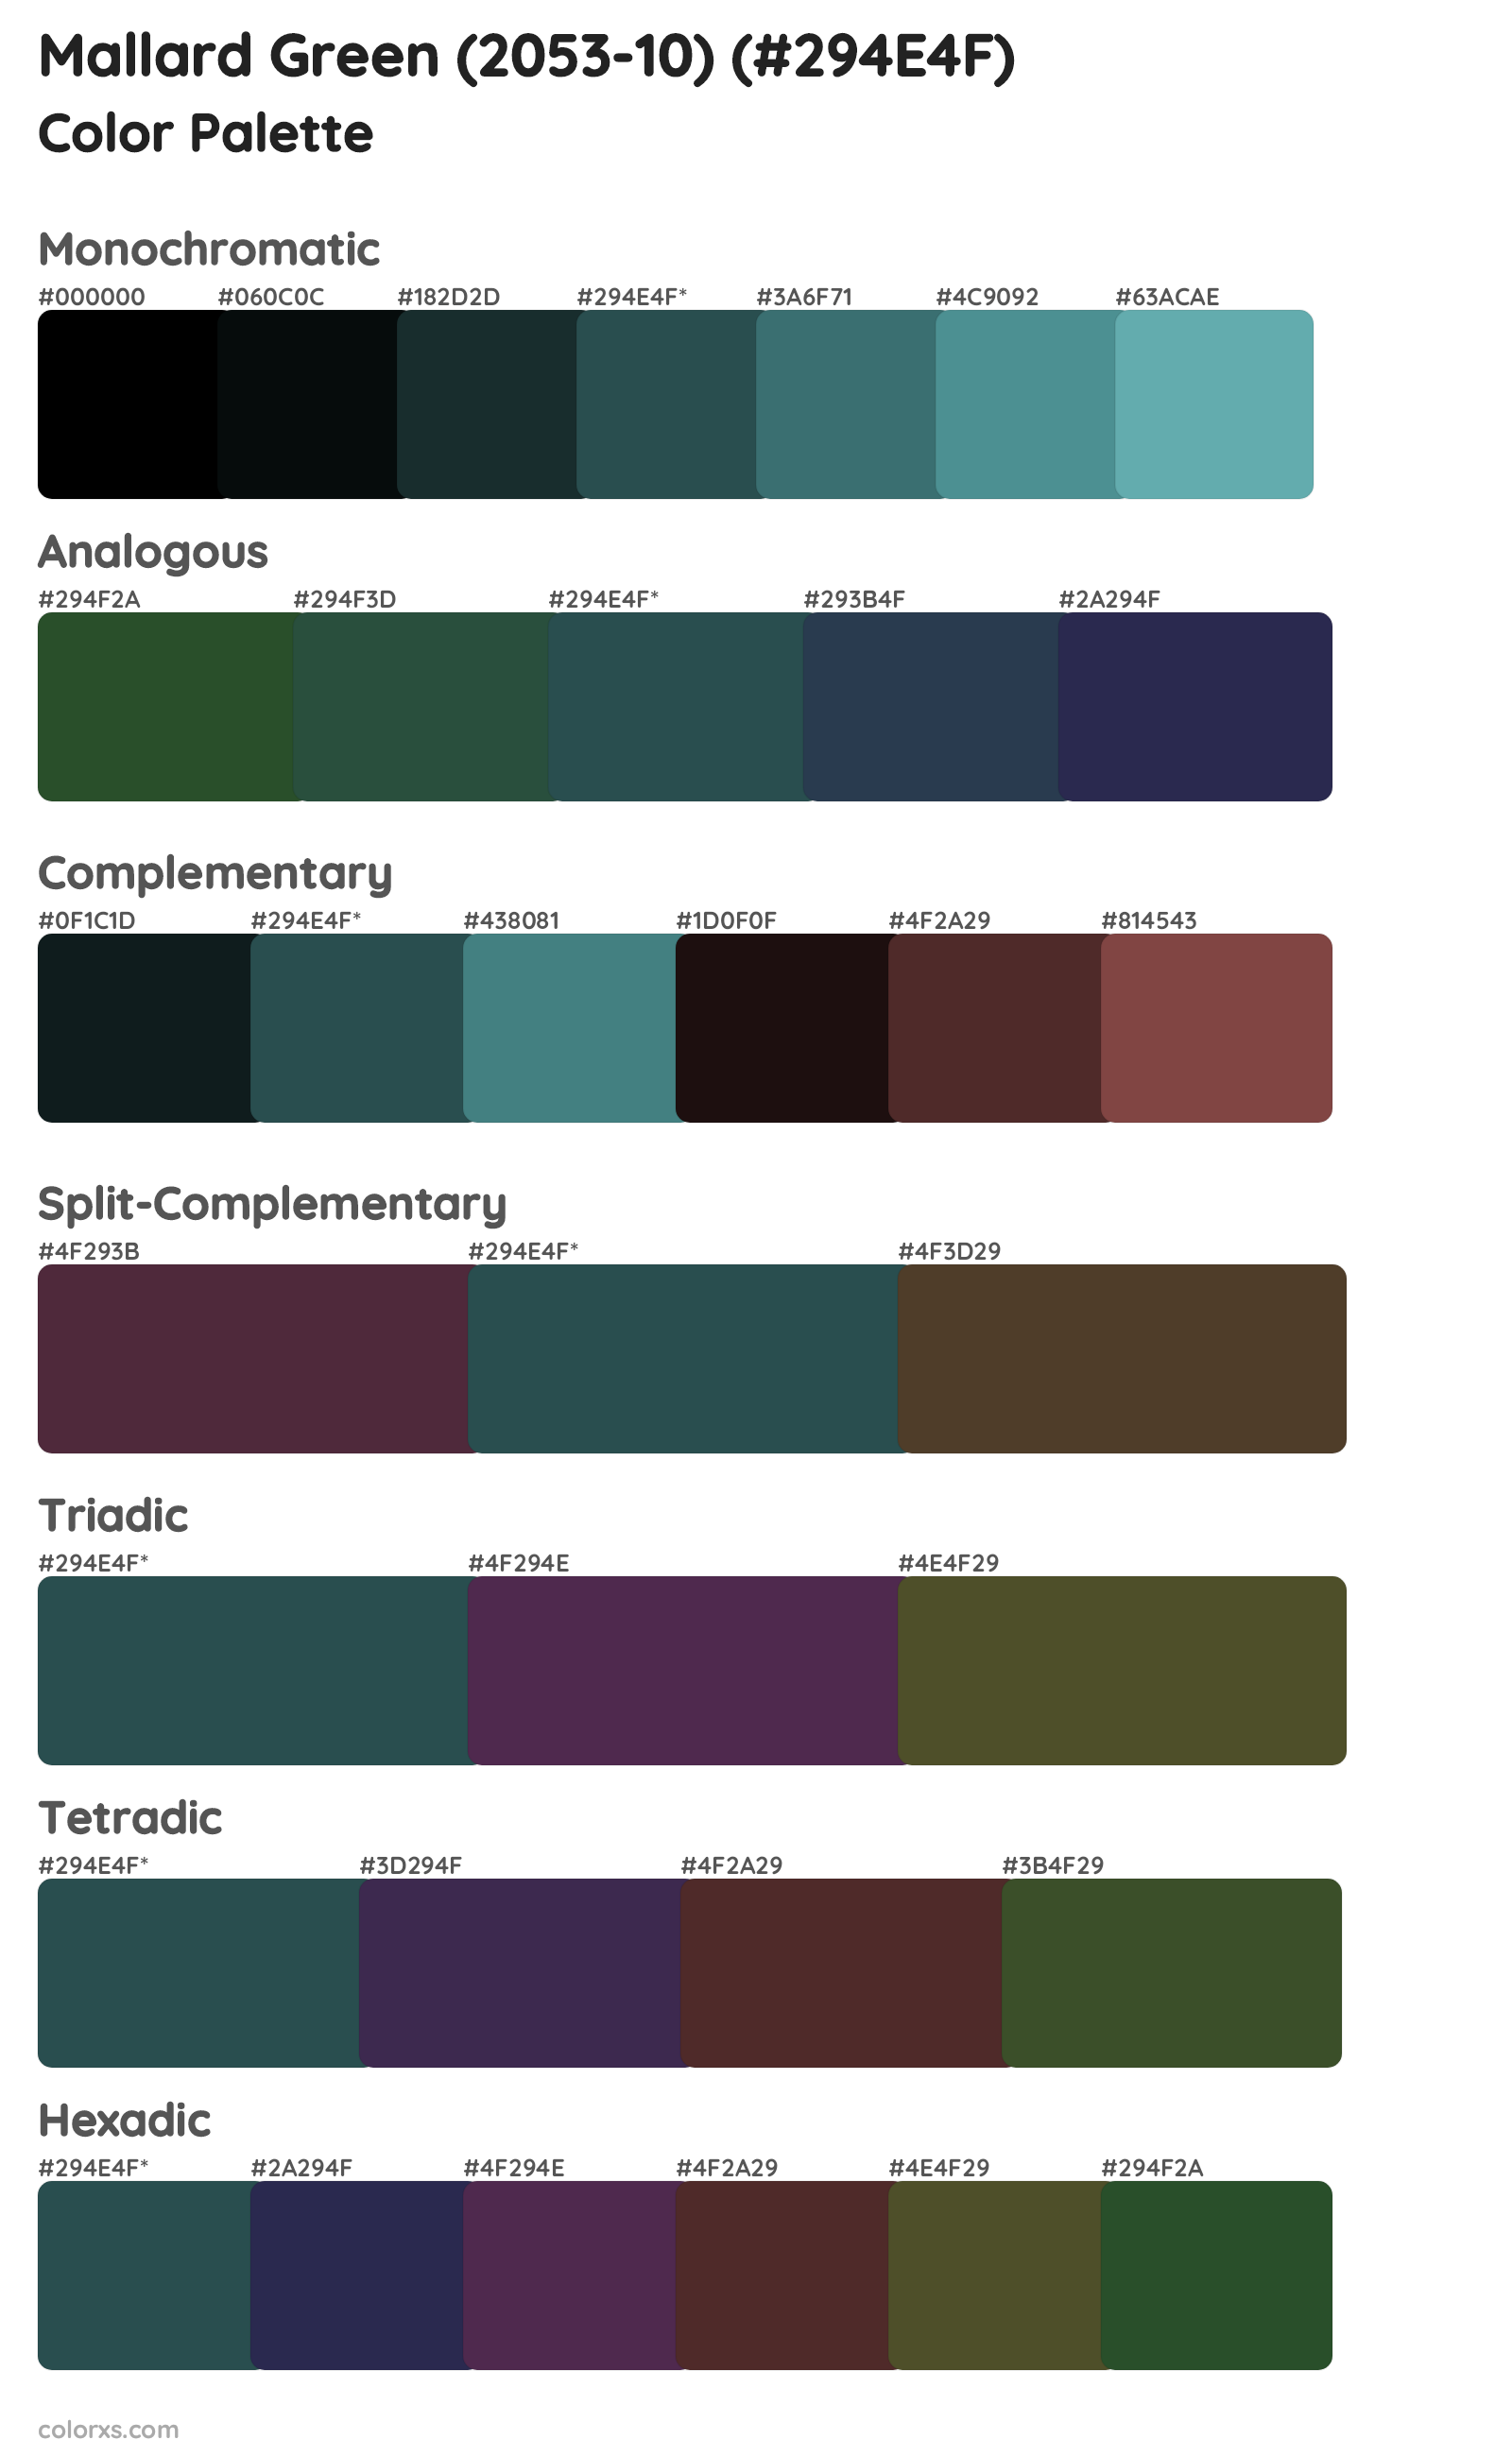 Mallard Green (2053-10) Color Scheme Palettes